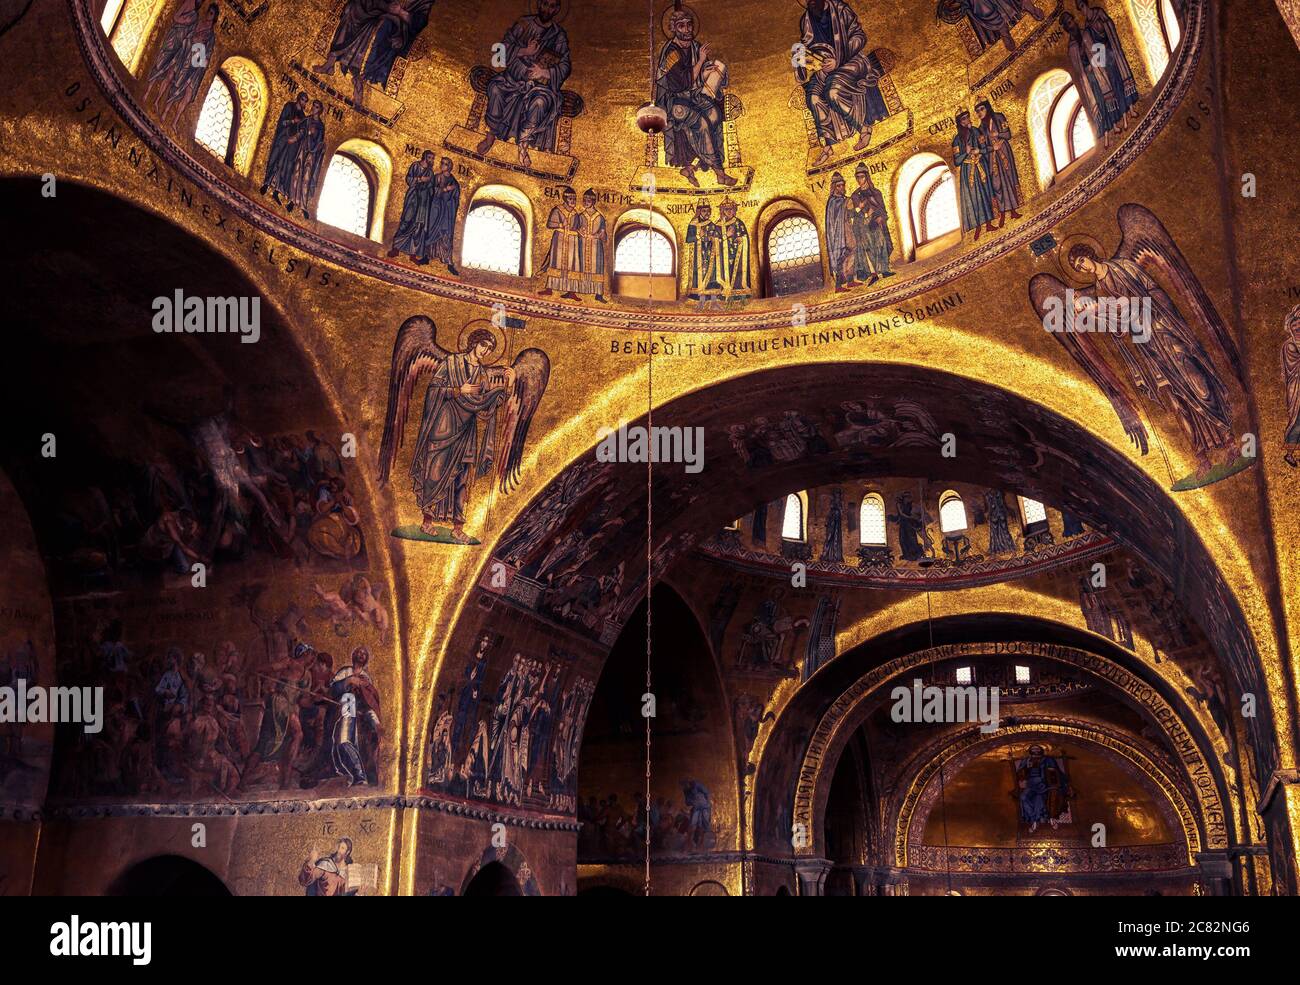 Venedig, Italien - 21. Mai 2017: Goldenes Mosaik-Interieur des alten Markusdom oder San Marco,`s ist das Wahrzeichen von Venedig. Luxuriöse Dekorationen innen S Stockfoto